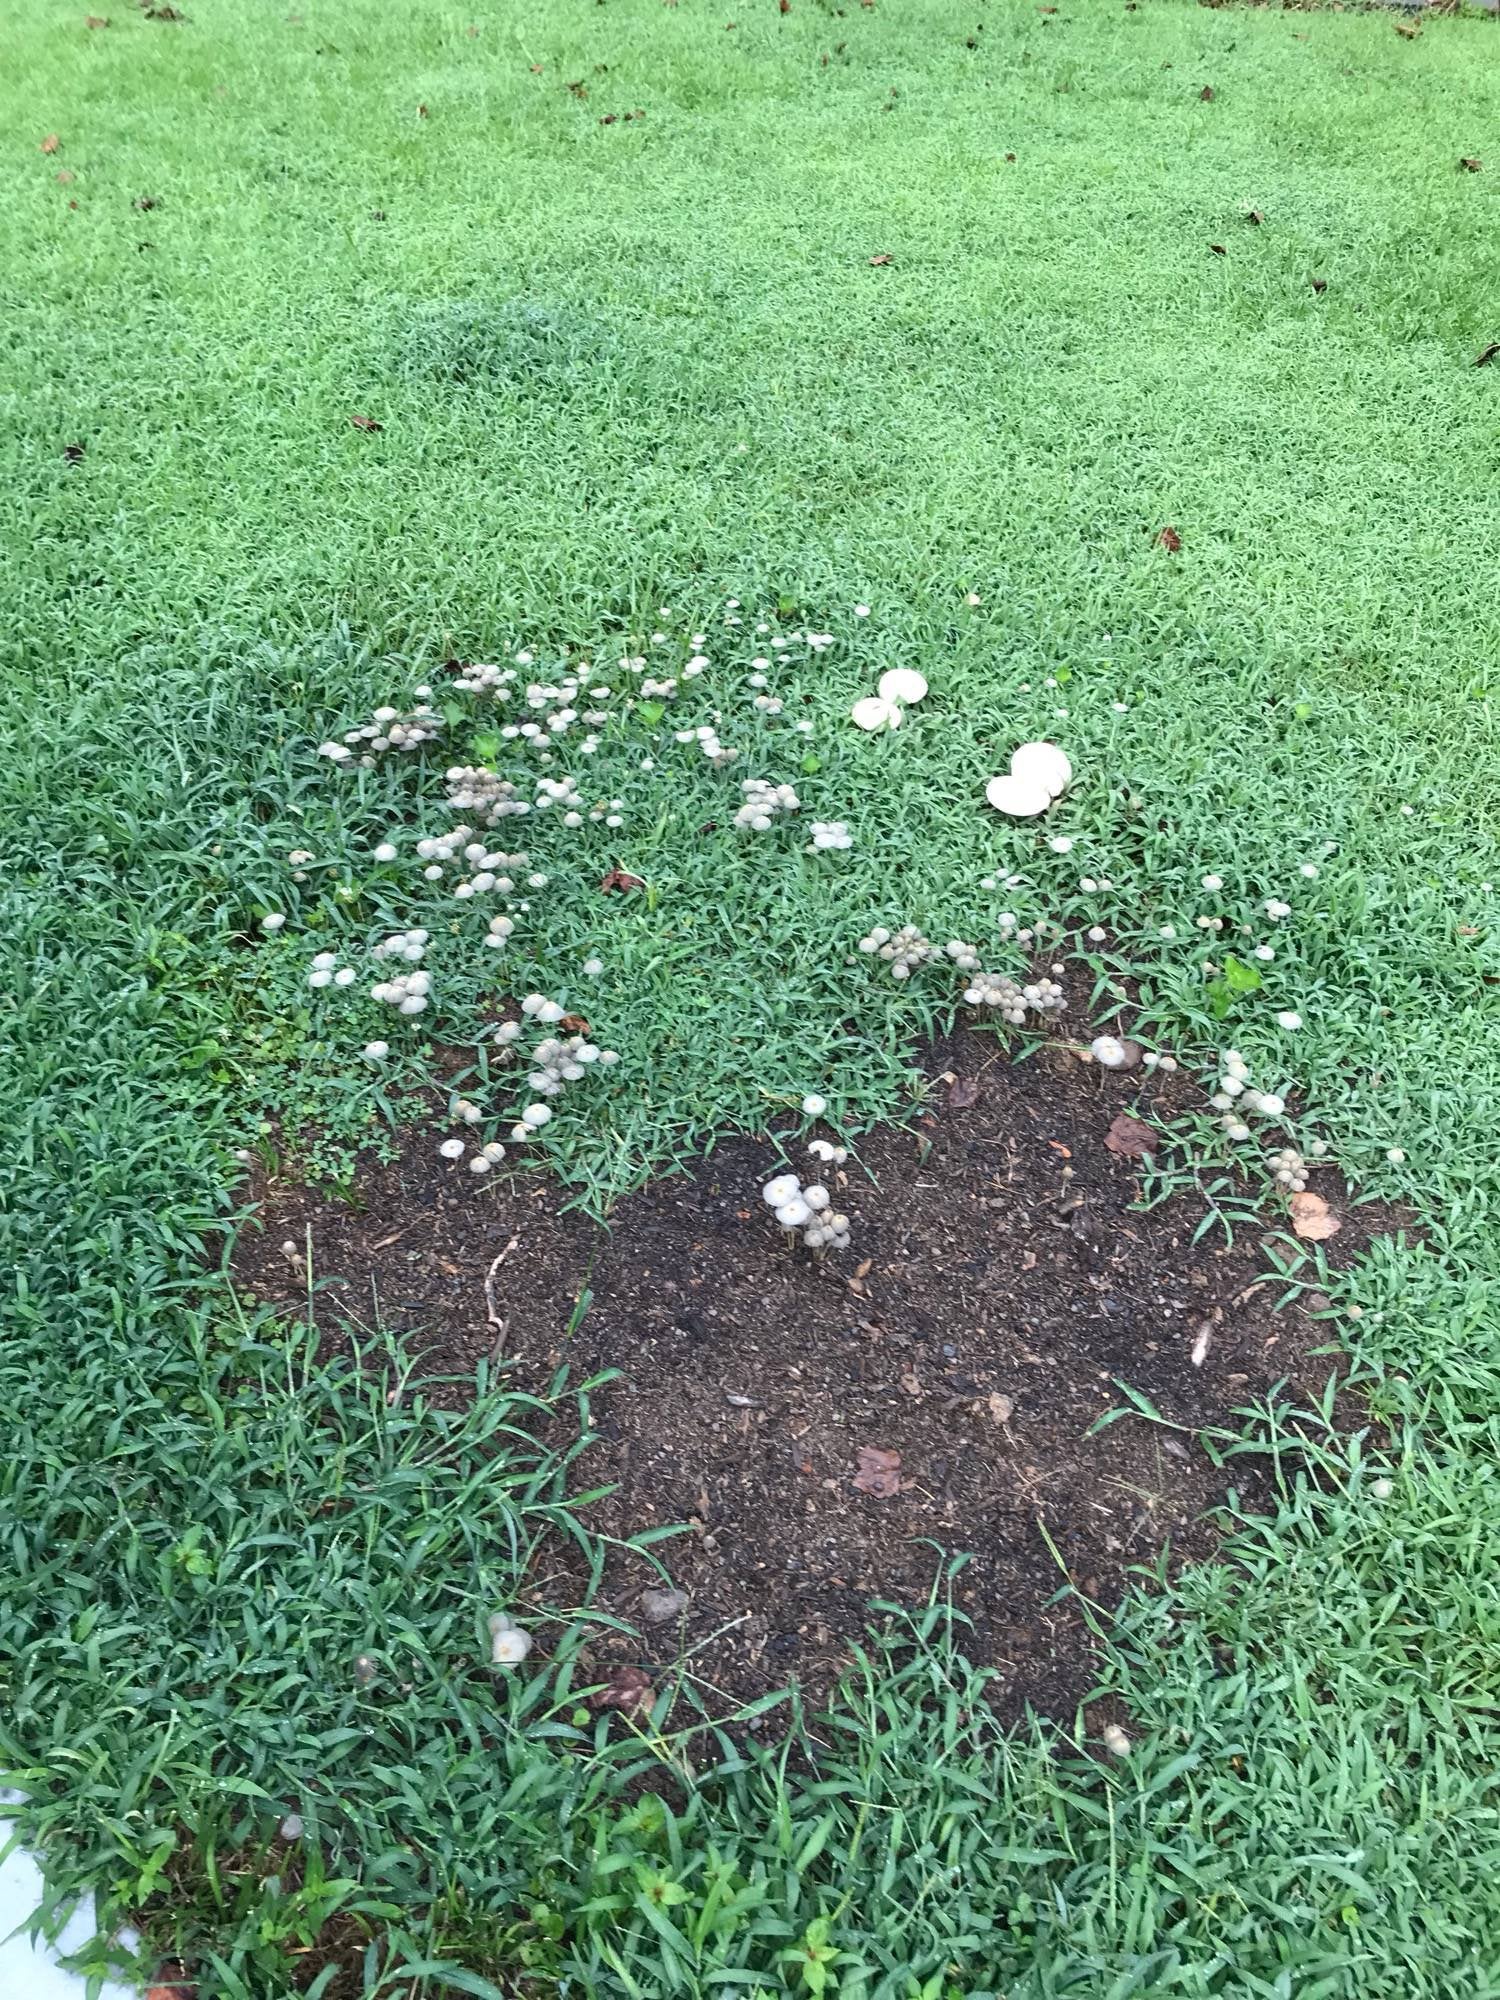 How to kill these mushrooms? [Georgia, USA] : lawncare